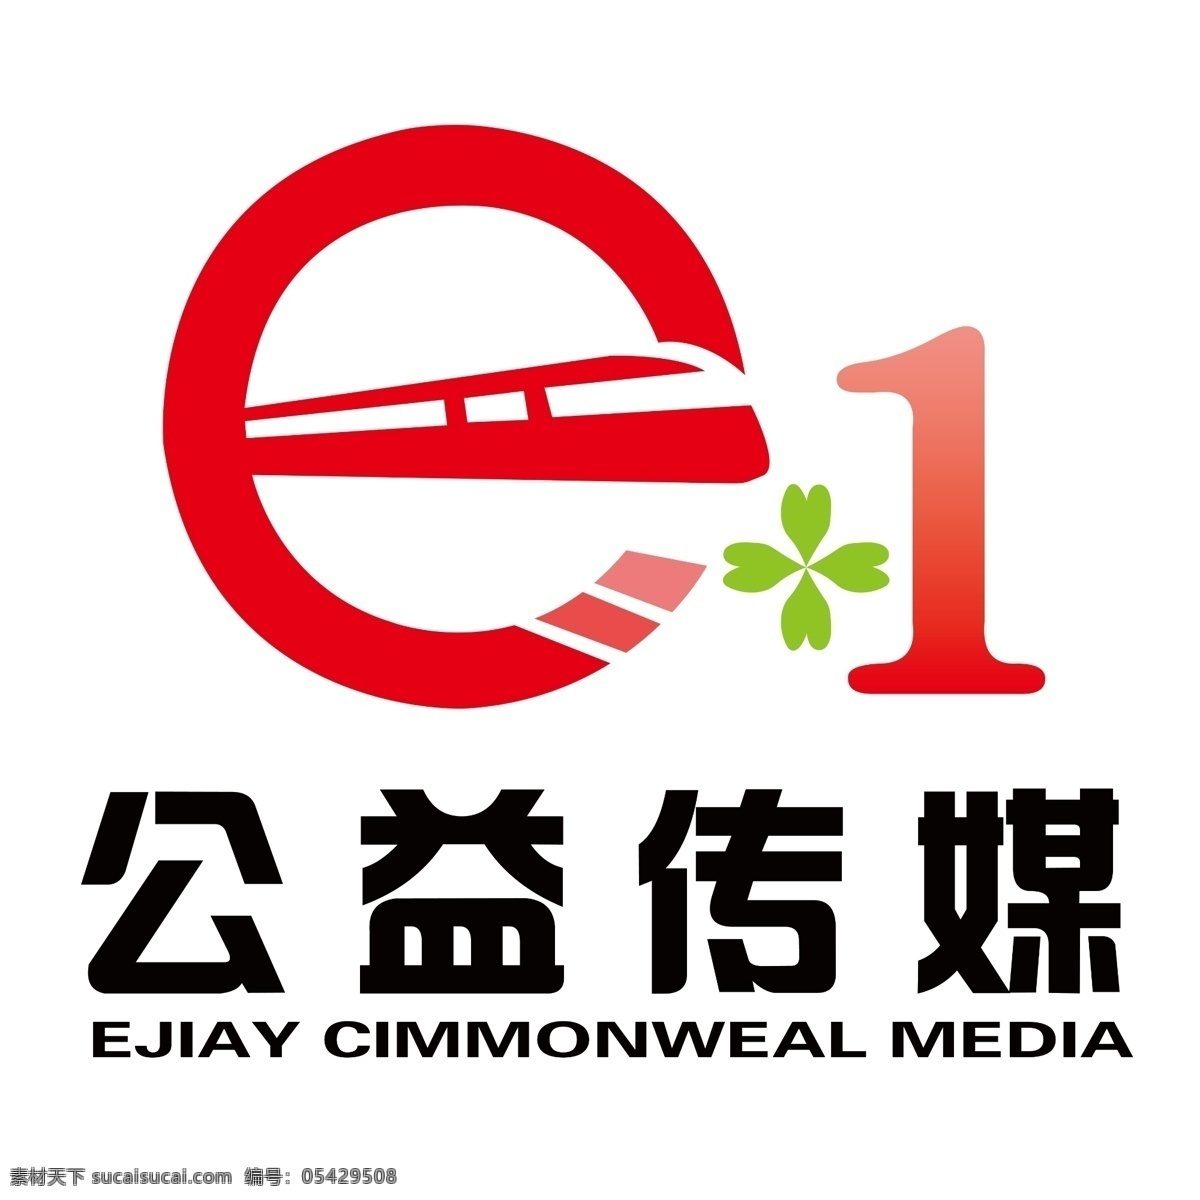 e1 公益 传媒 标志 logo 精细分层 psd文件 高清logo 四叶草 公益传媒